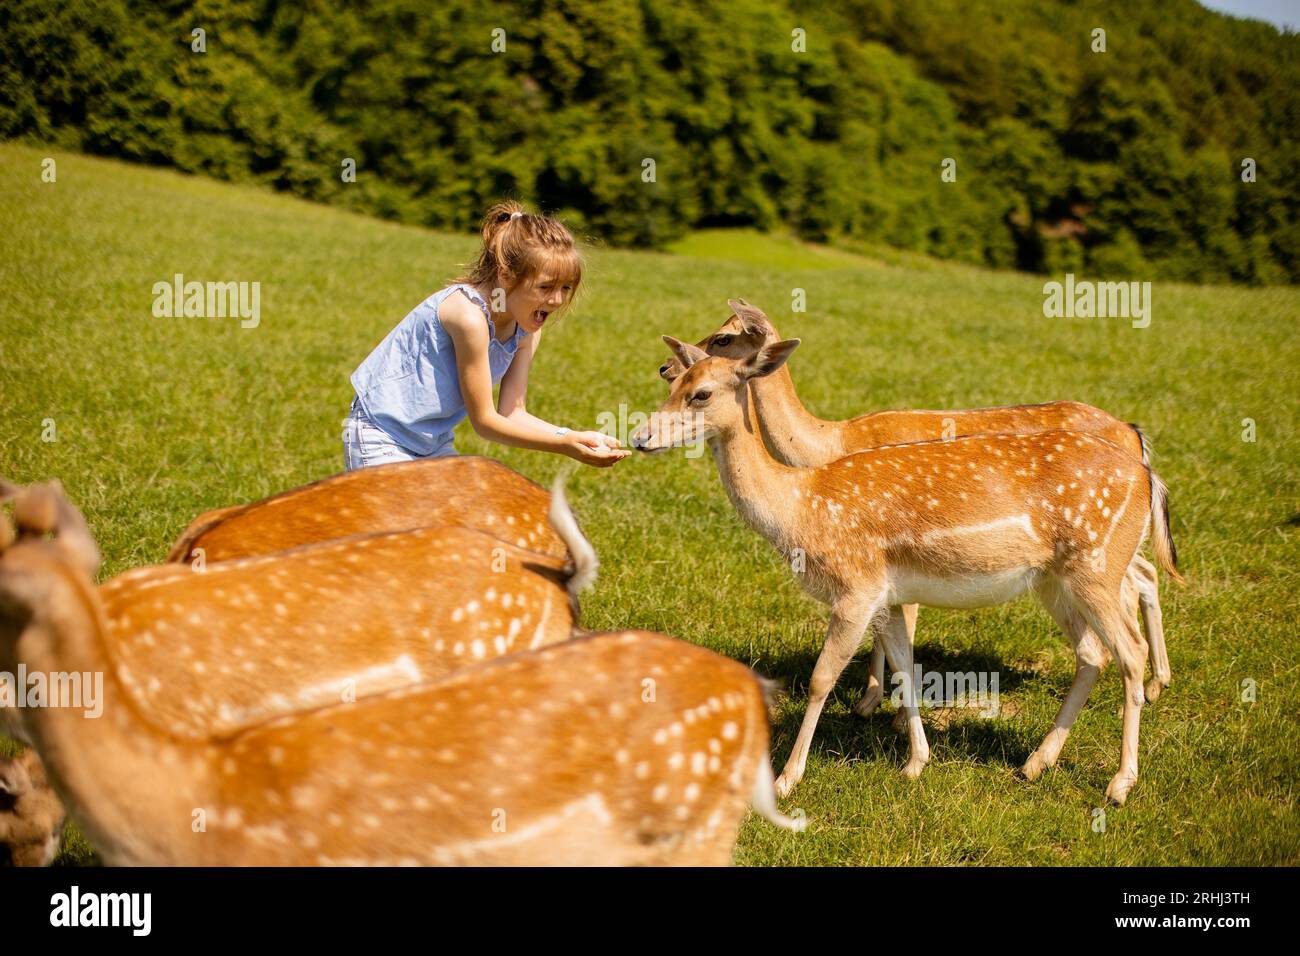 Graziosa bambina tra le mandrie di renne nella giornata di sole Foto Stock